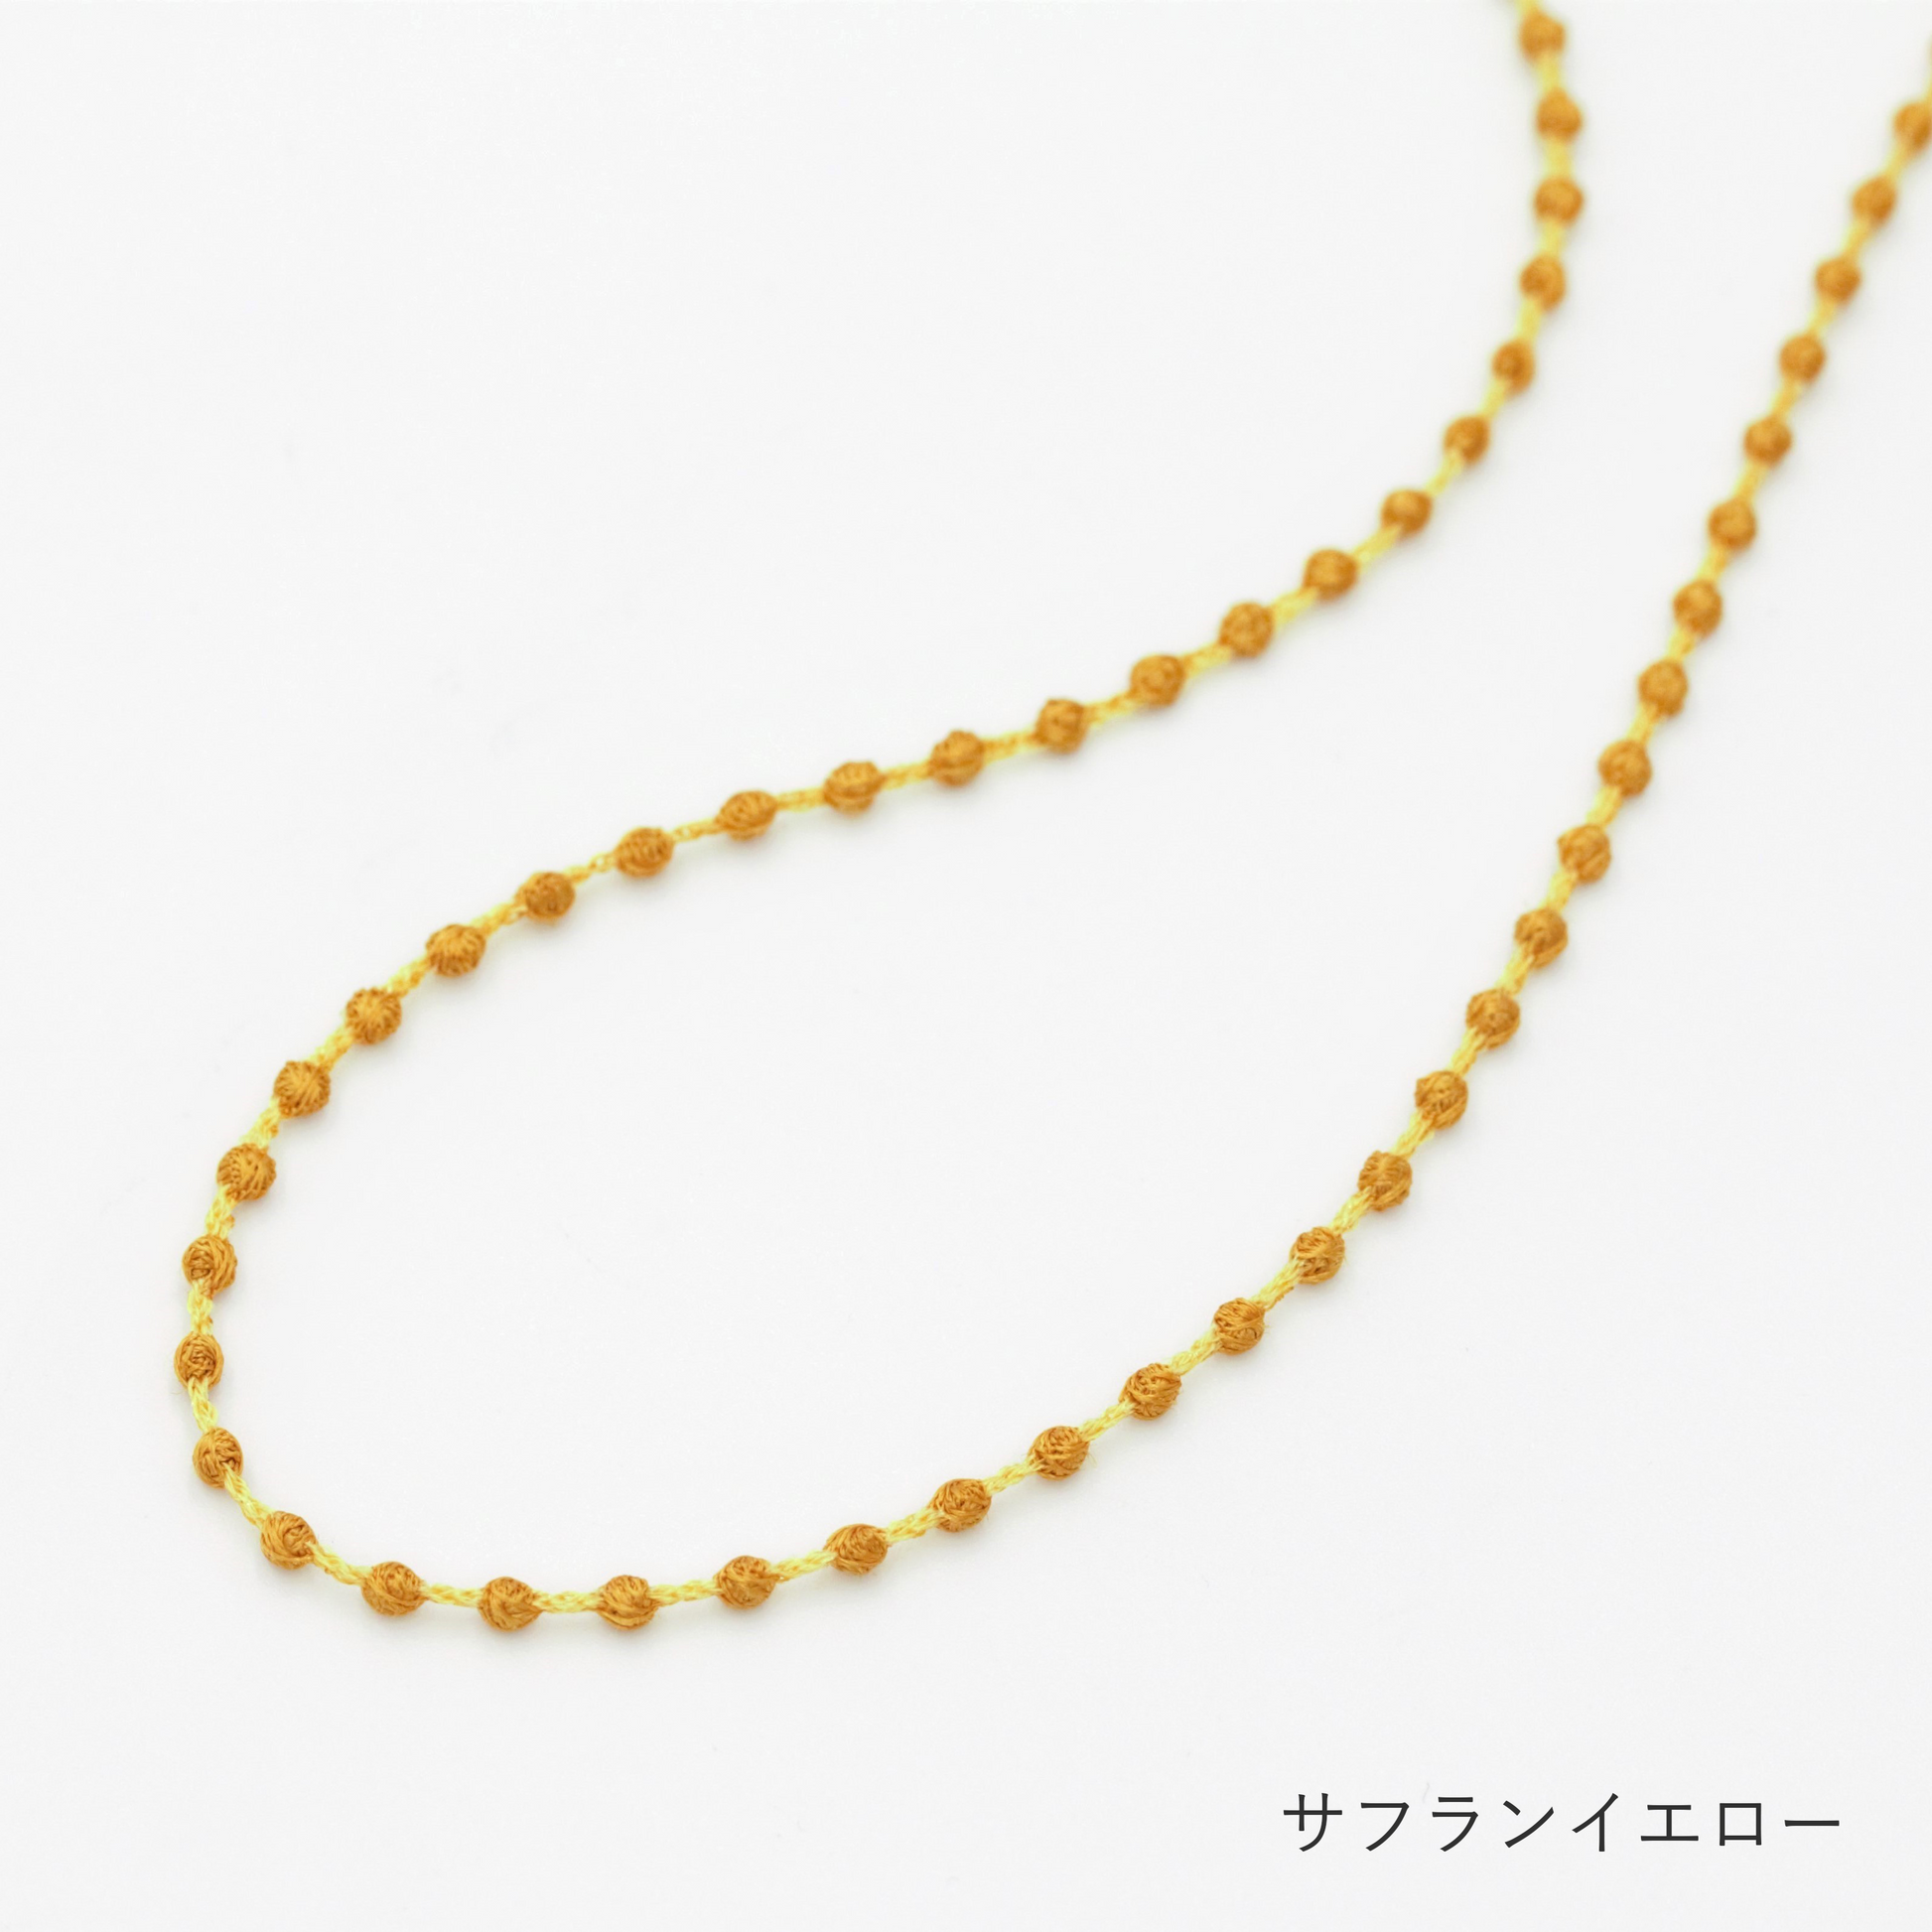 Necklace Nano Sphere - Saffron Yellow